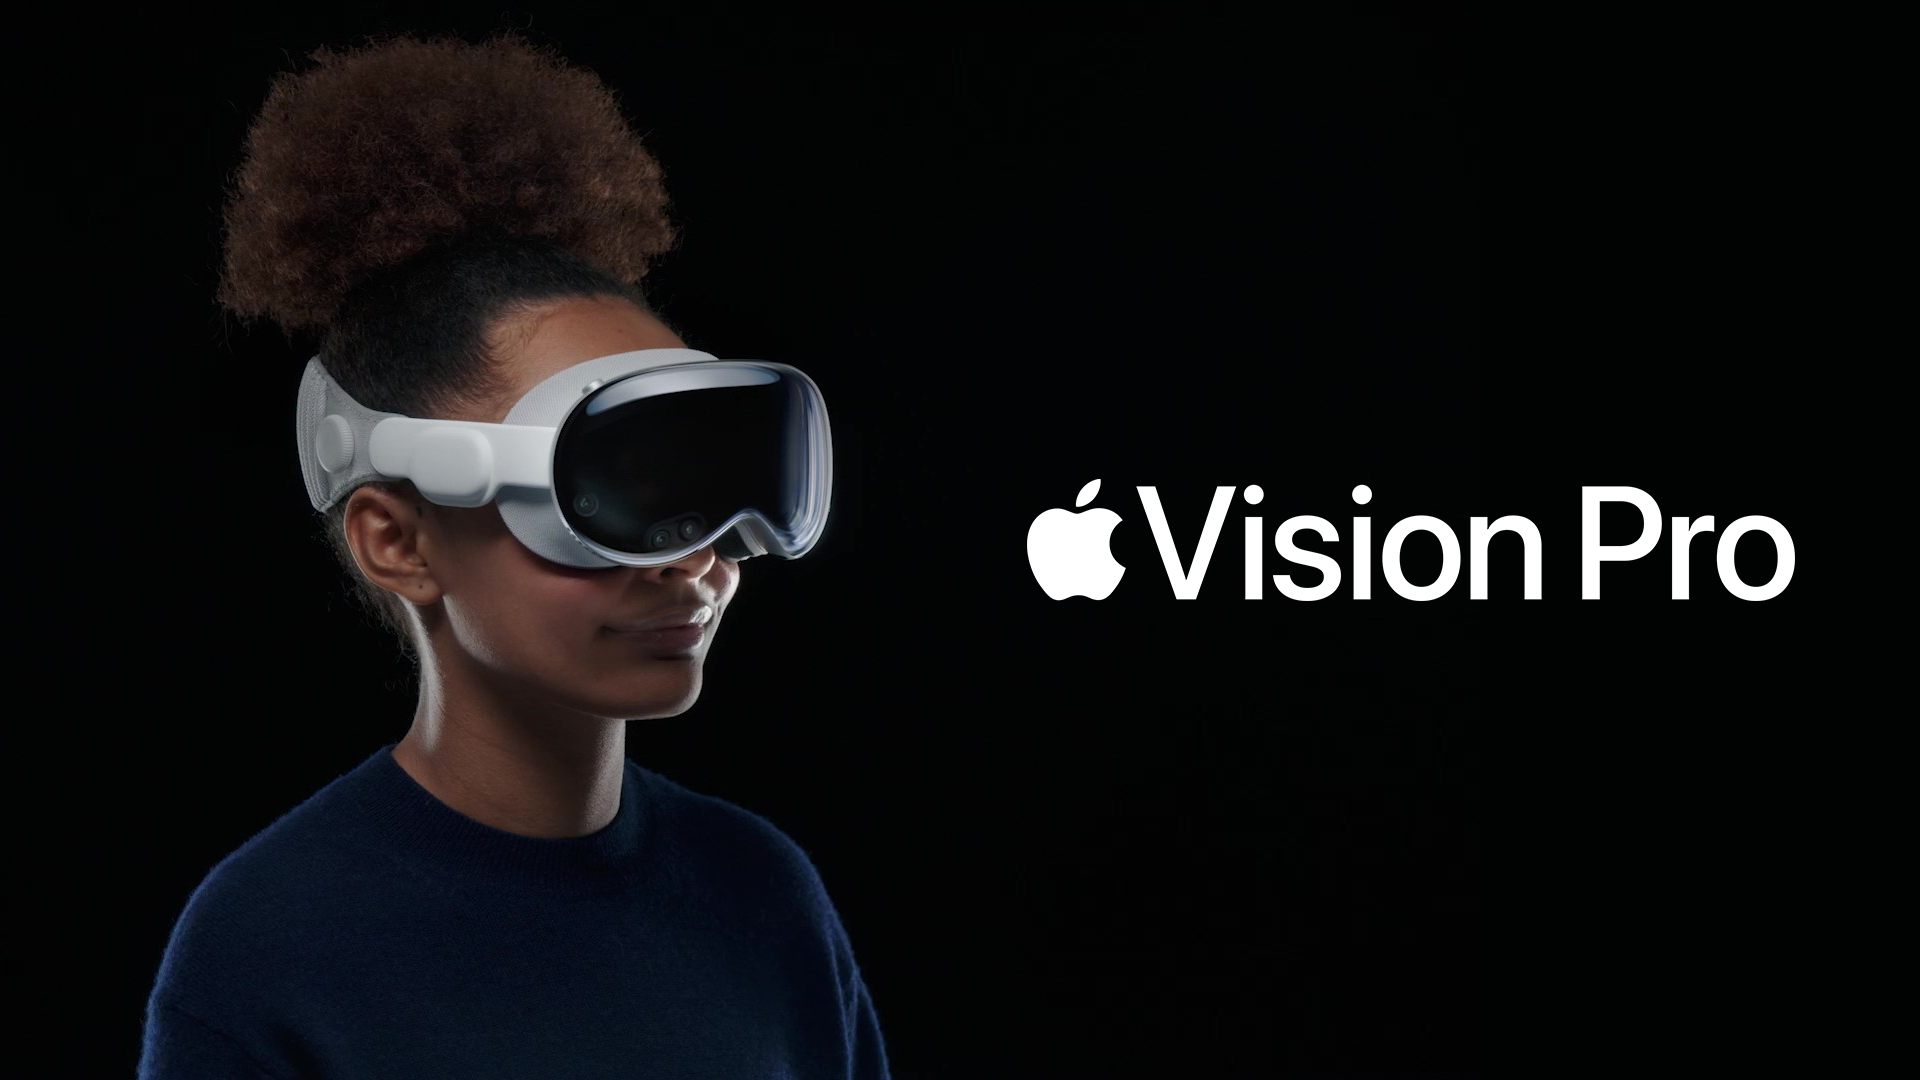 Apple Vision Pro zal naar verluidt een zeer trage uitrol hebben